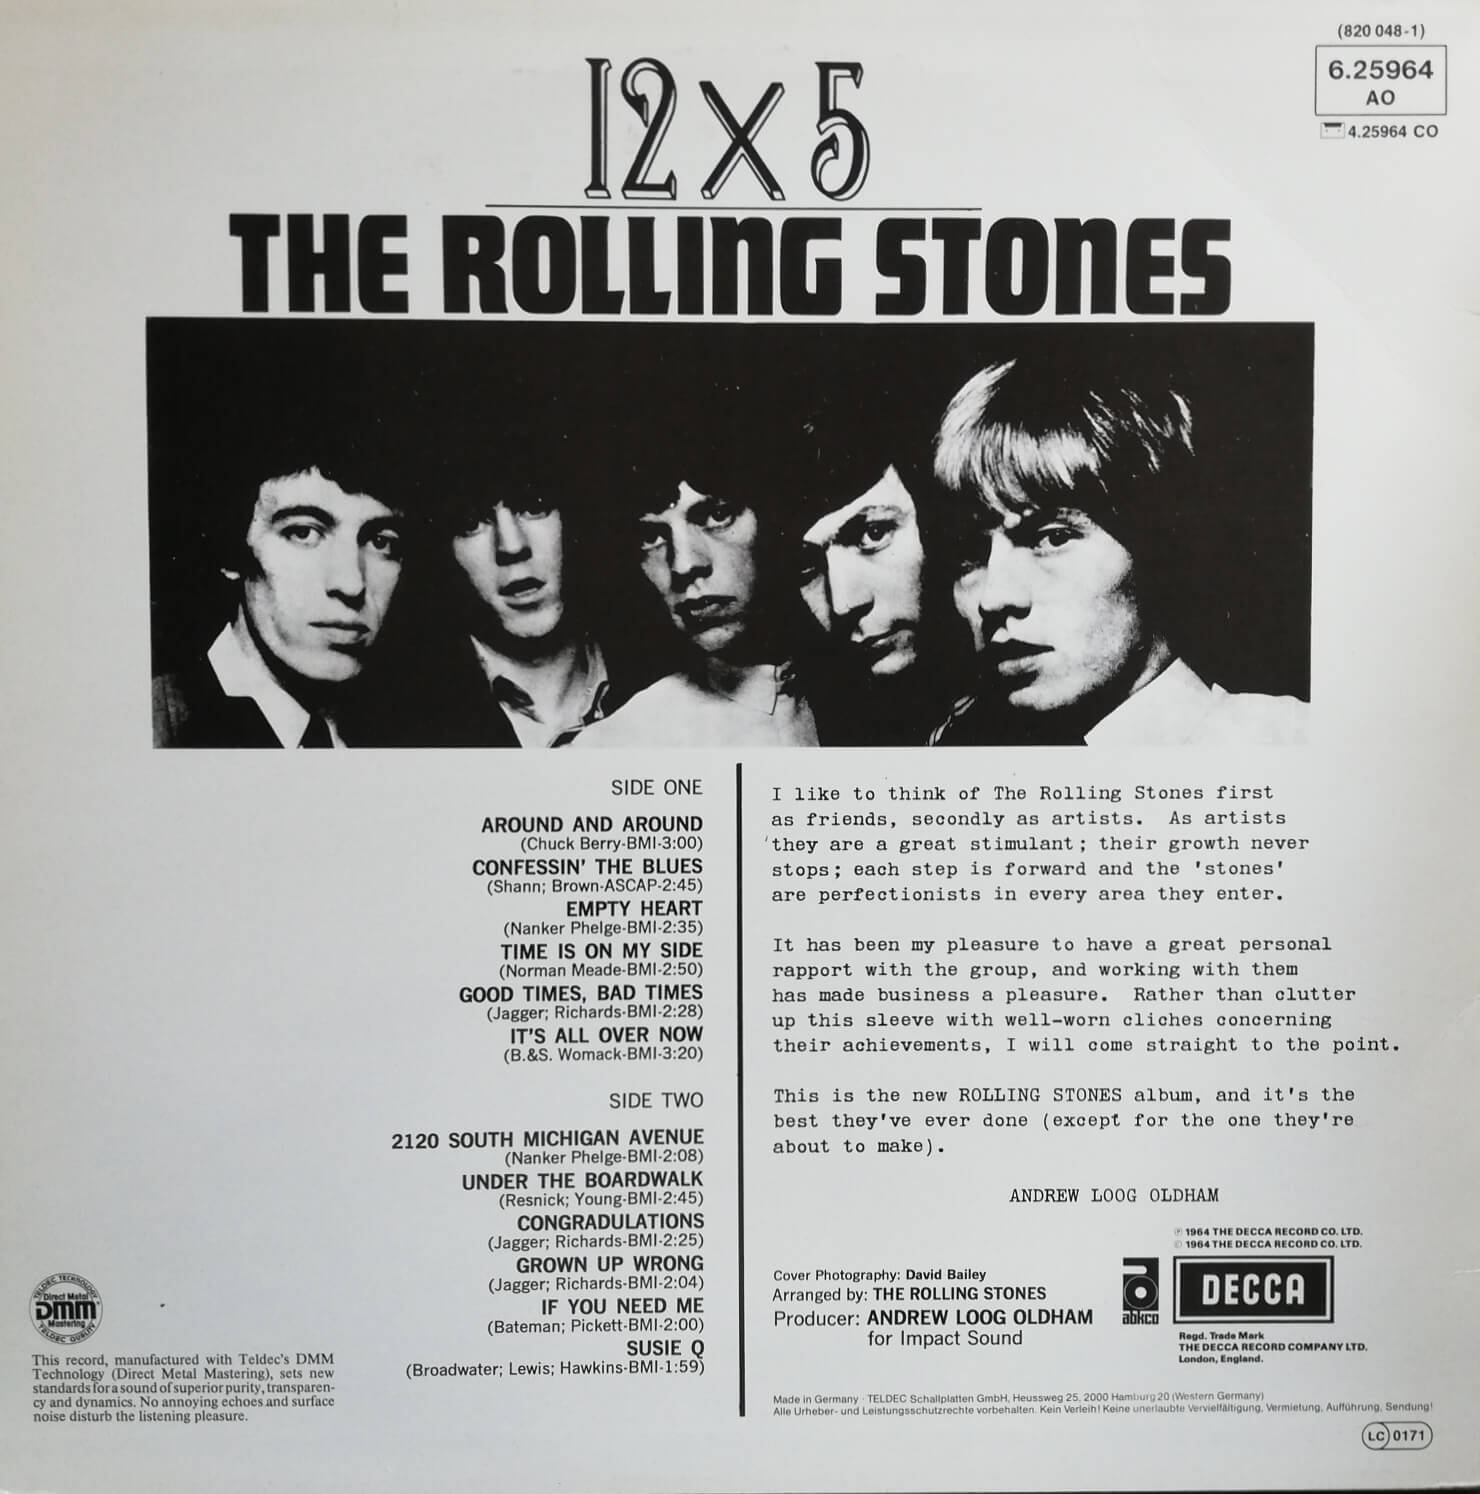 Okładka płyty winylowej artysty The Rolling Stones o tytule 12x5